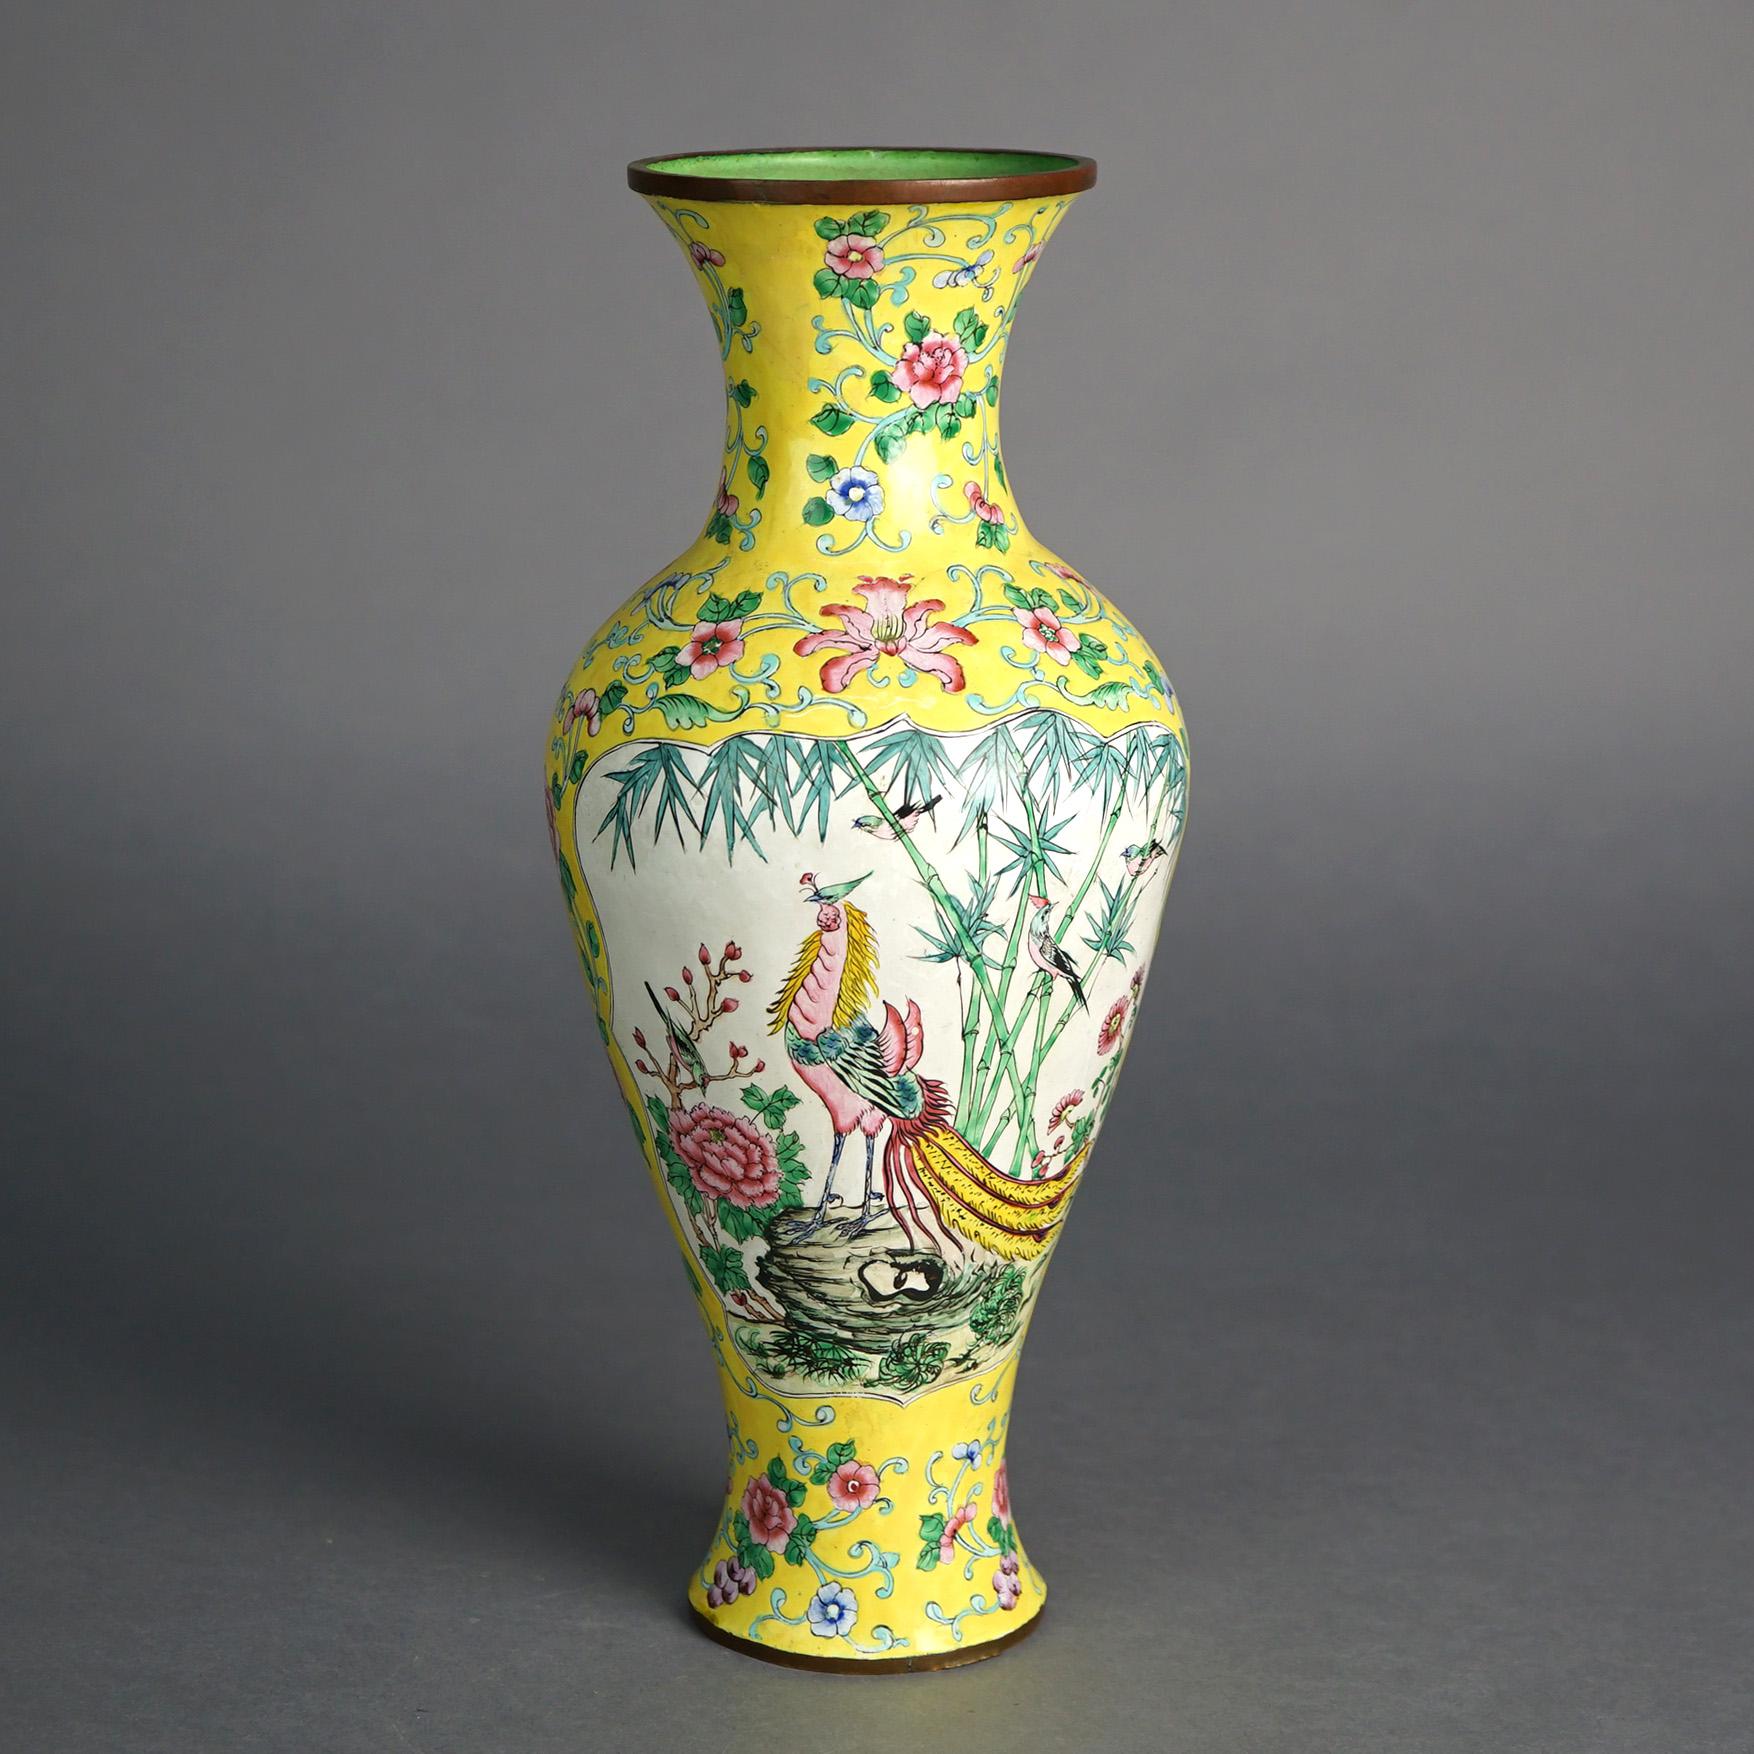 Antike chinesische emaillierte Vase mit Landschaft und Blumen C1930

Maße: 13''H x 5,5''B x 5,5''D